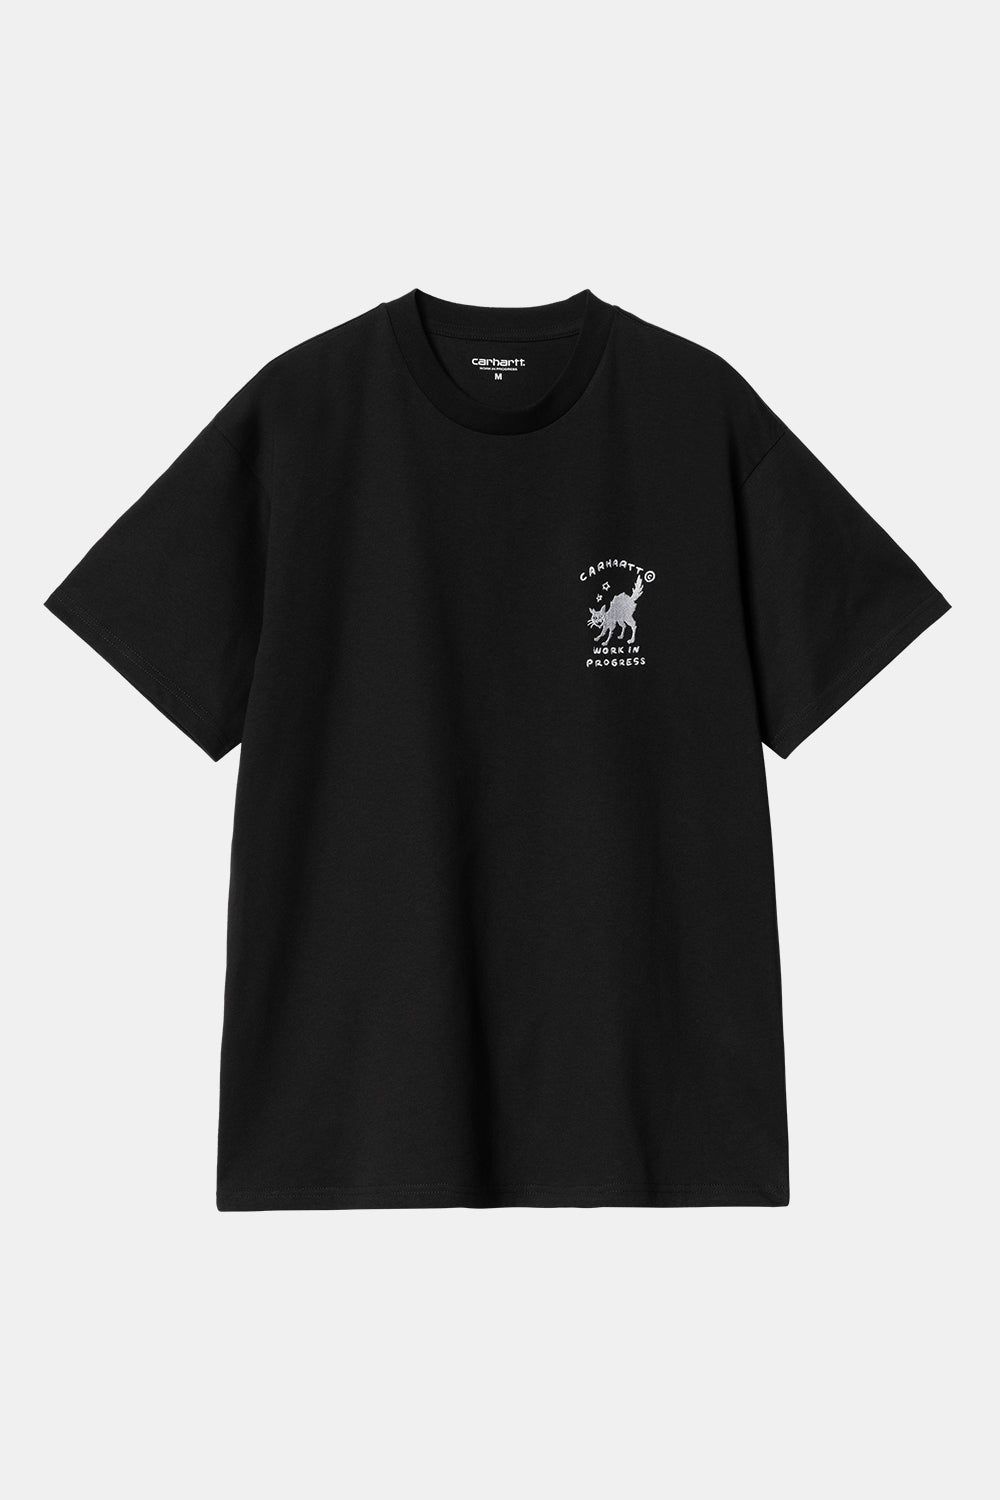 Carhartt WIP kortærmet T-shirt med ikoner (sort/hvid)